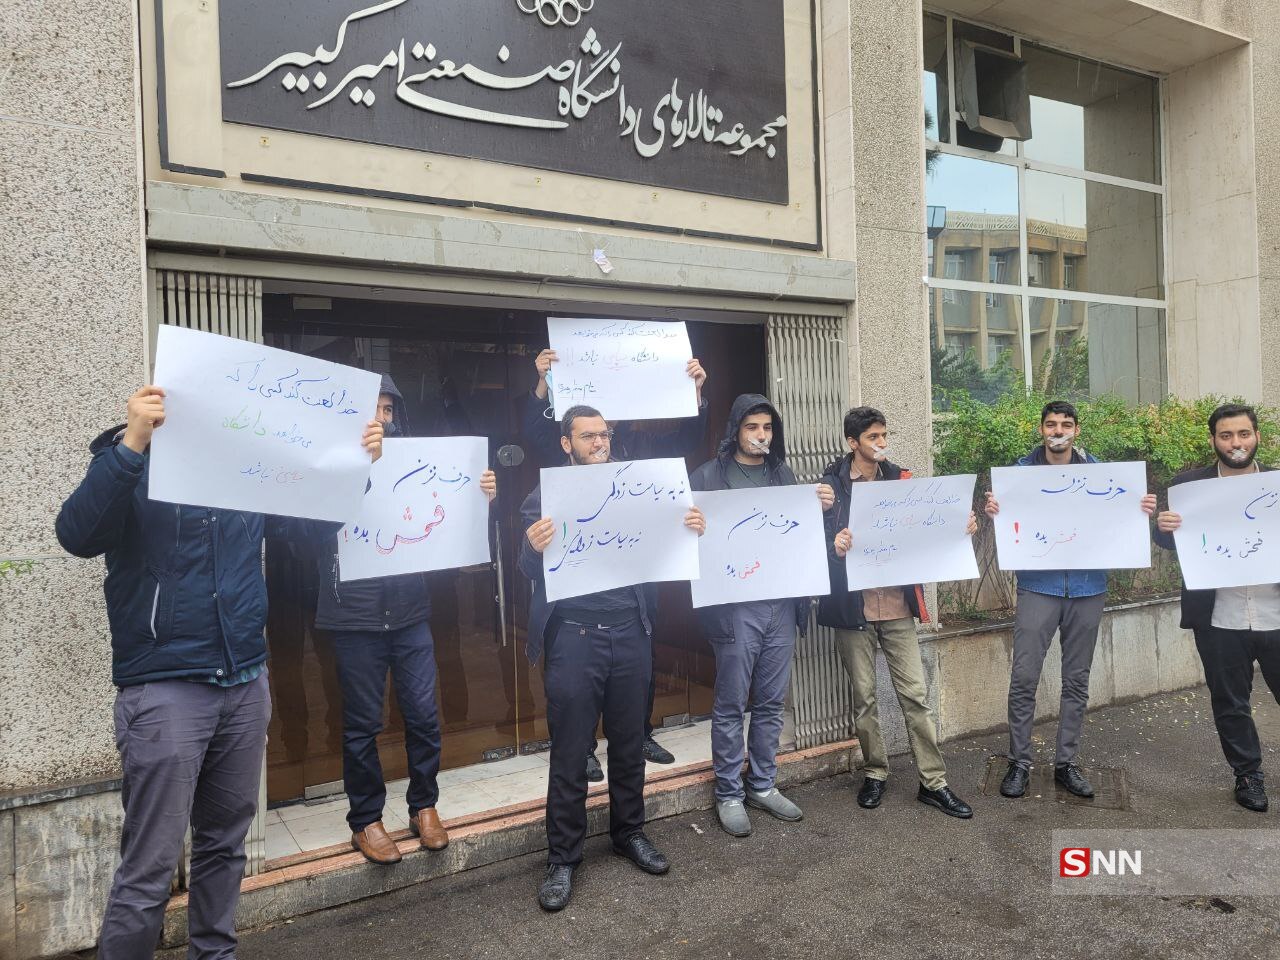 حرکت اعتراضی تعدادی از دانشجویان بسیجی نسبت به تصمیم عجیب مدیریت دانشگاه امیرکبیر +تصاویر